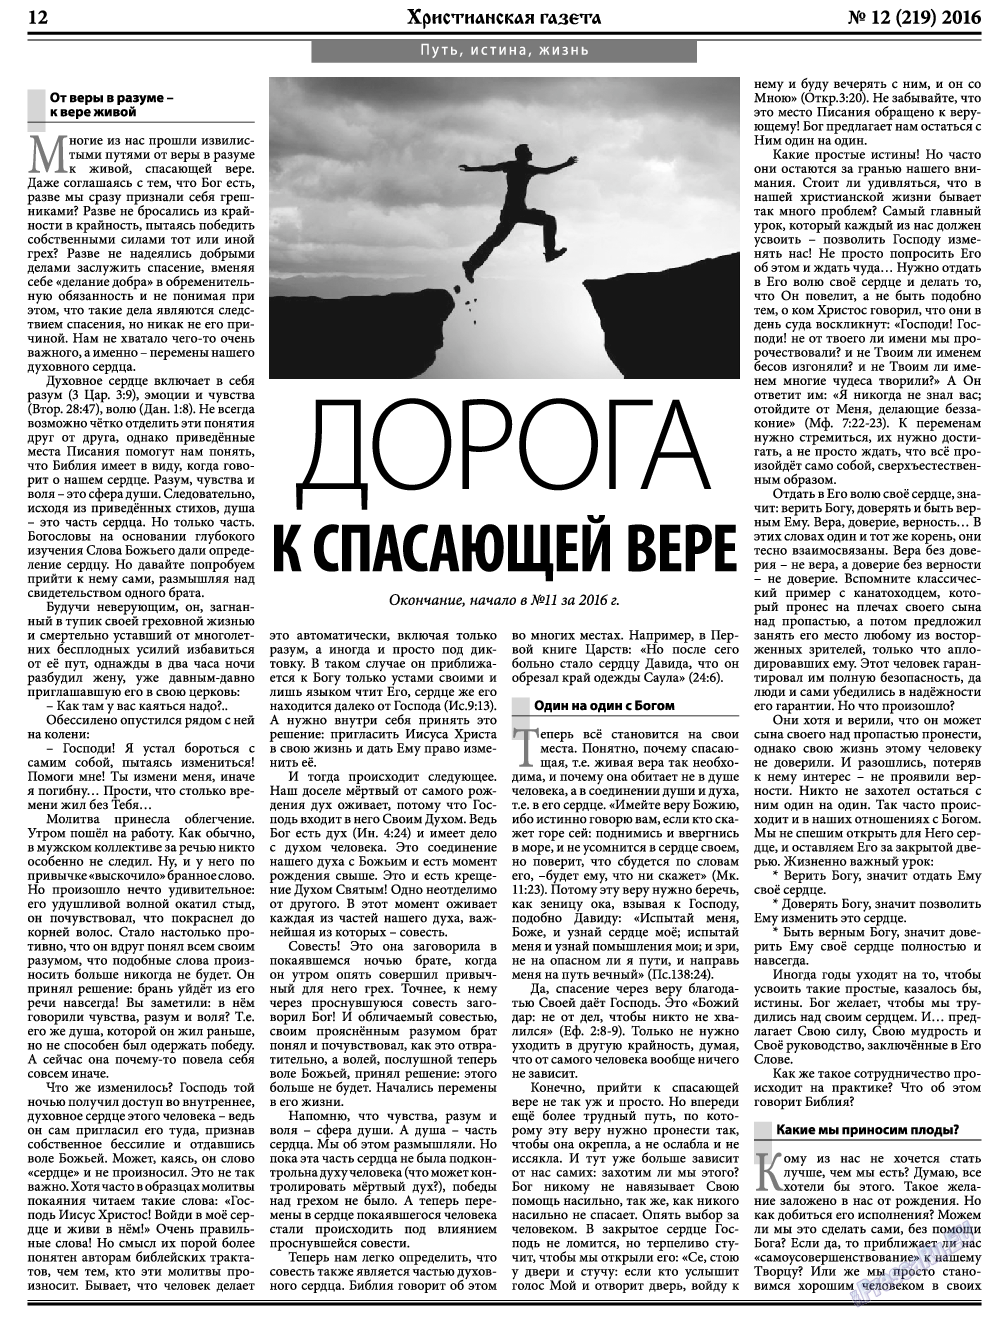 Христианская газета, газета. 2016 №12 стр.12